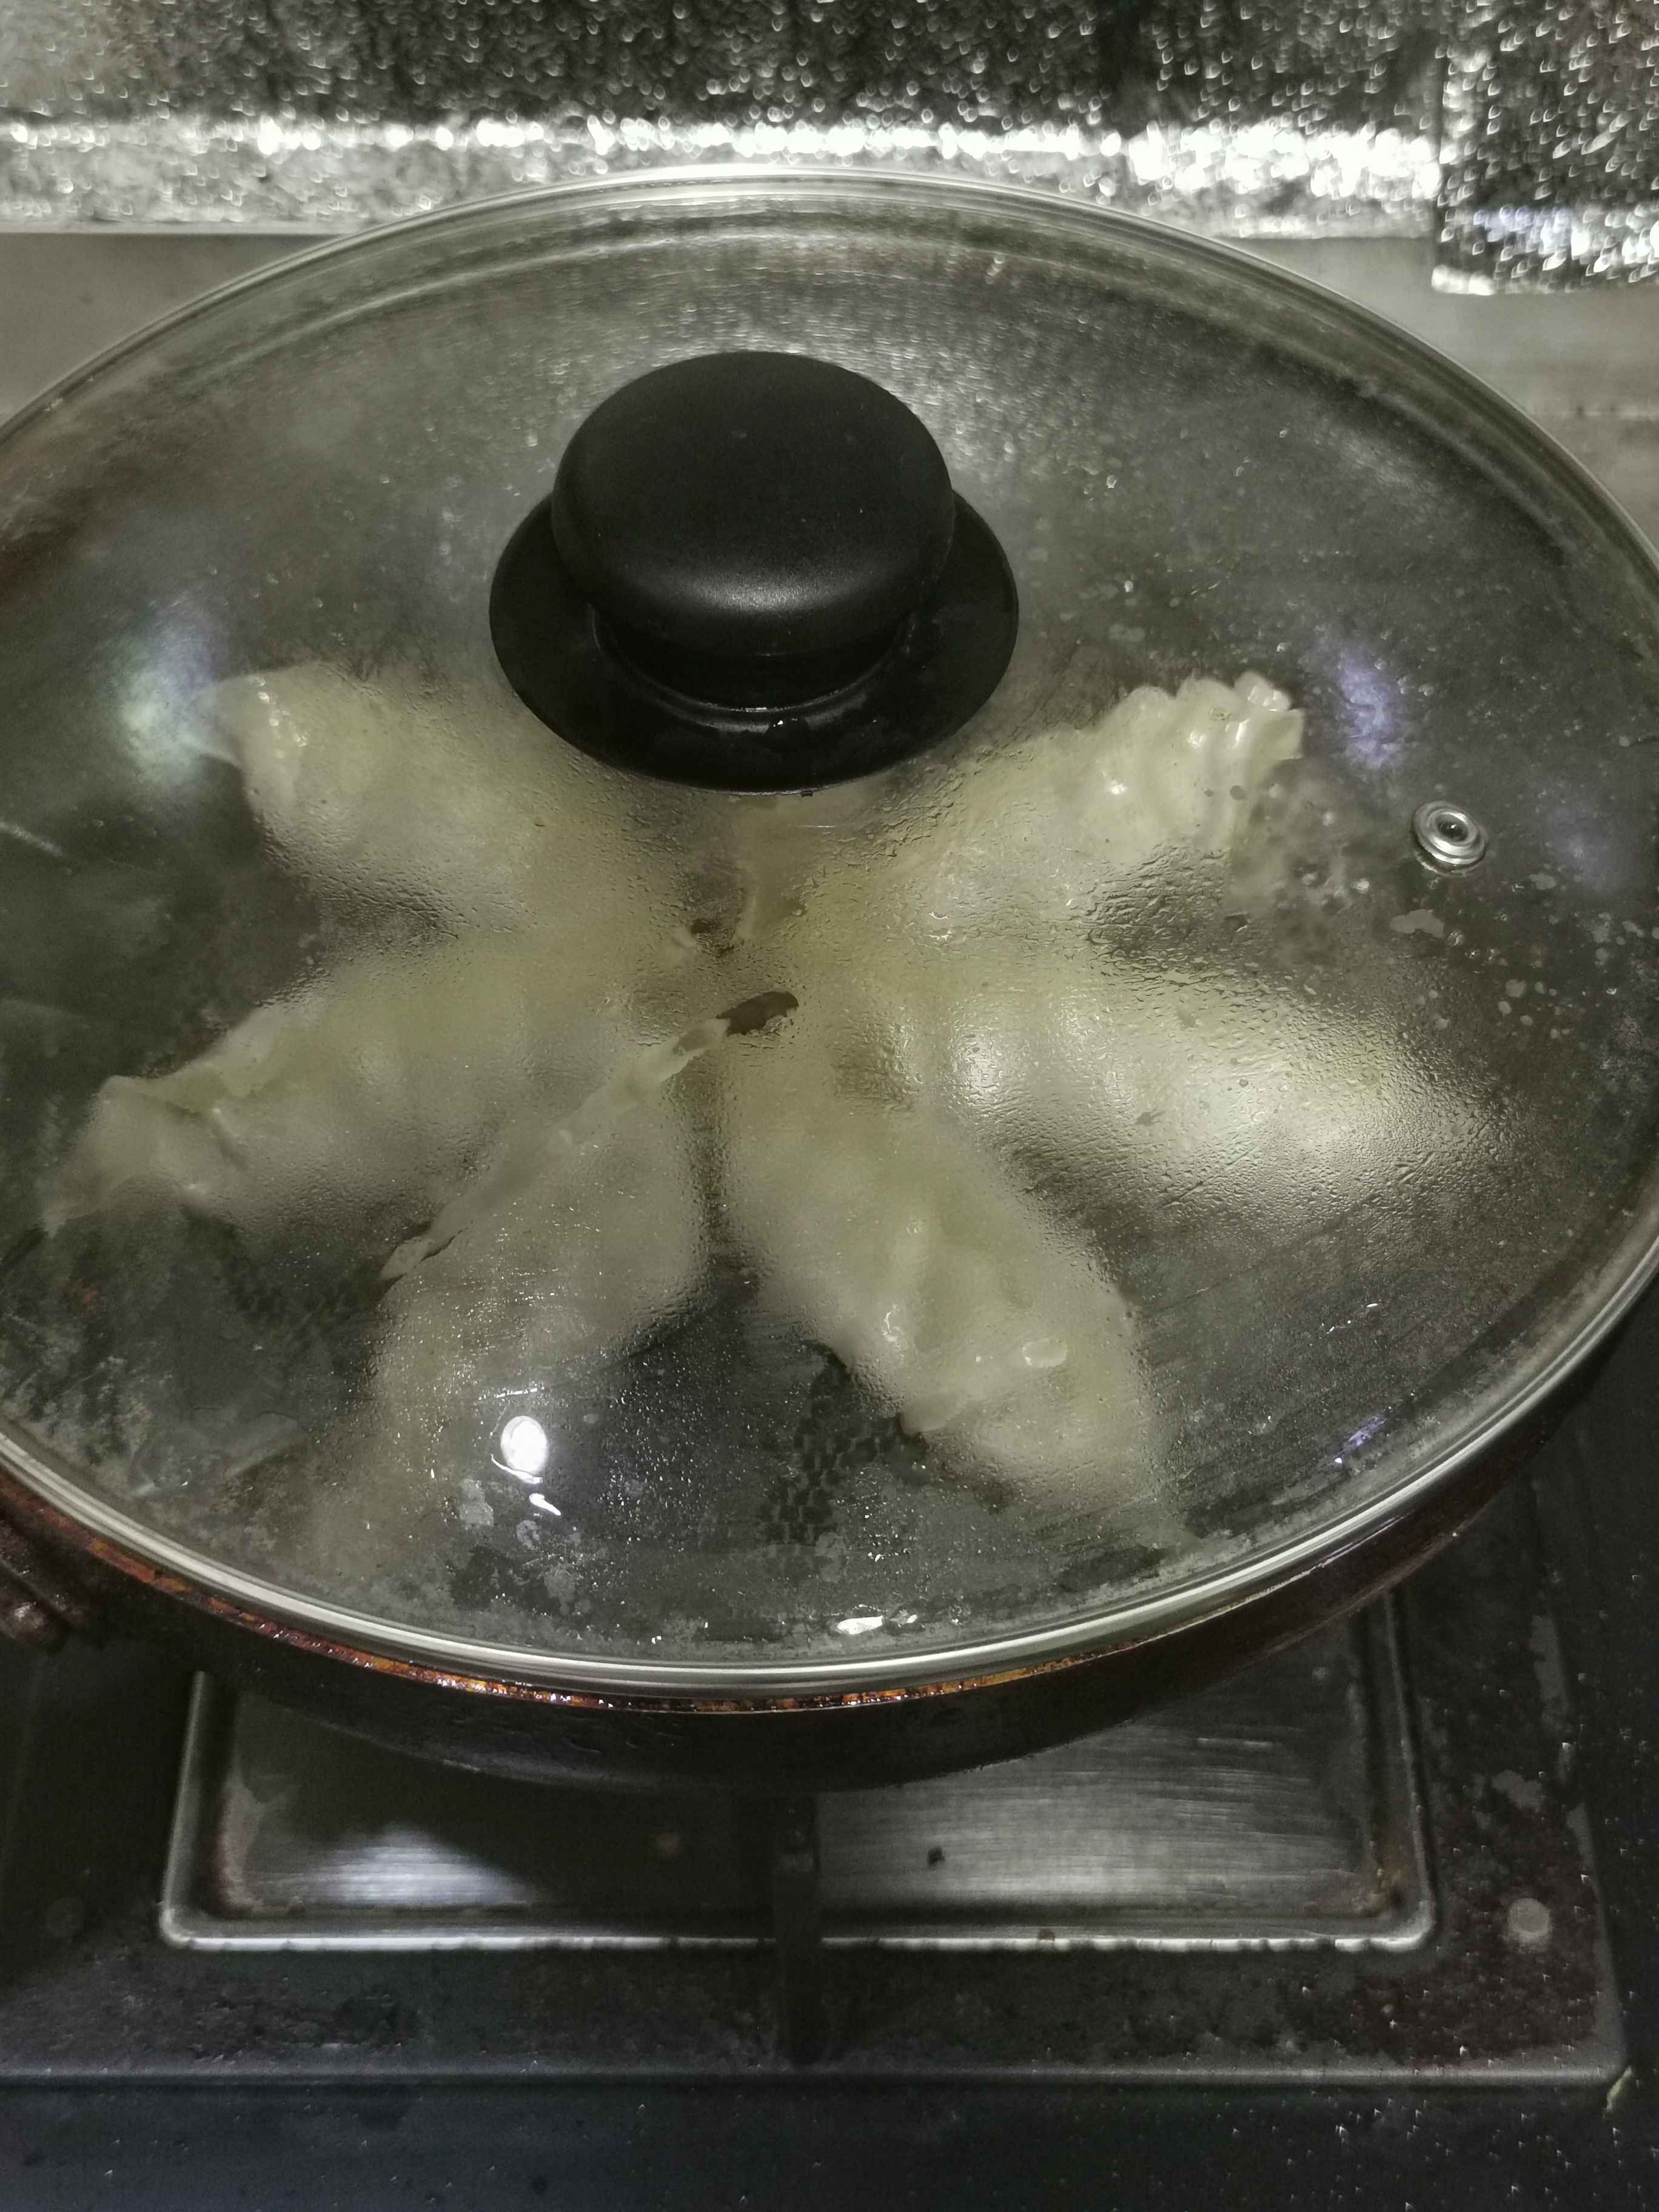 A Delicious Breakfast in 5 Minutes ~ Baodan Fried Dumplings recipe